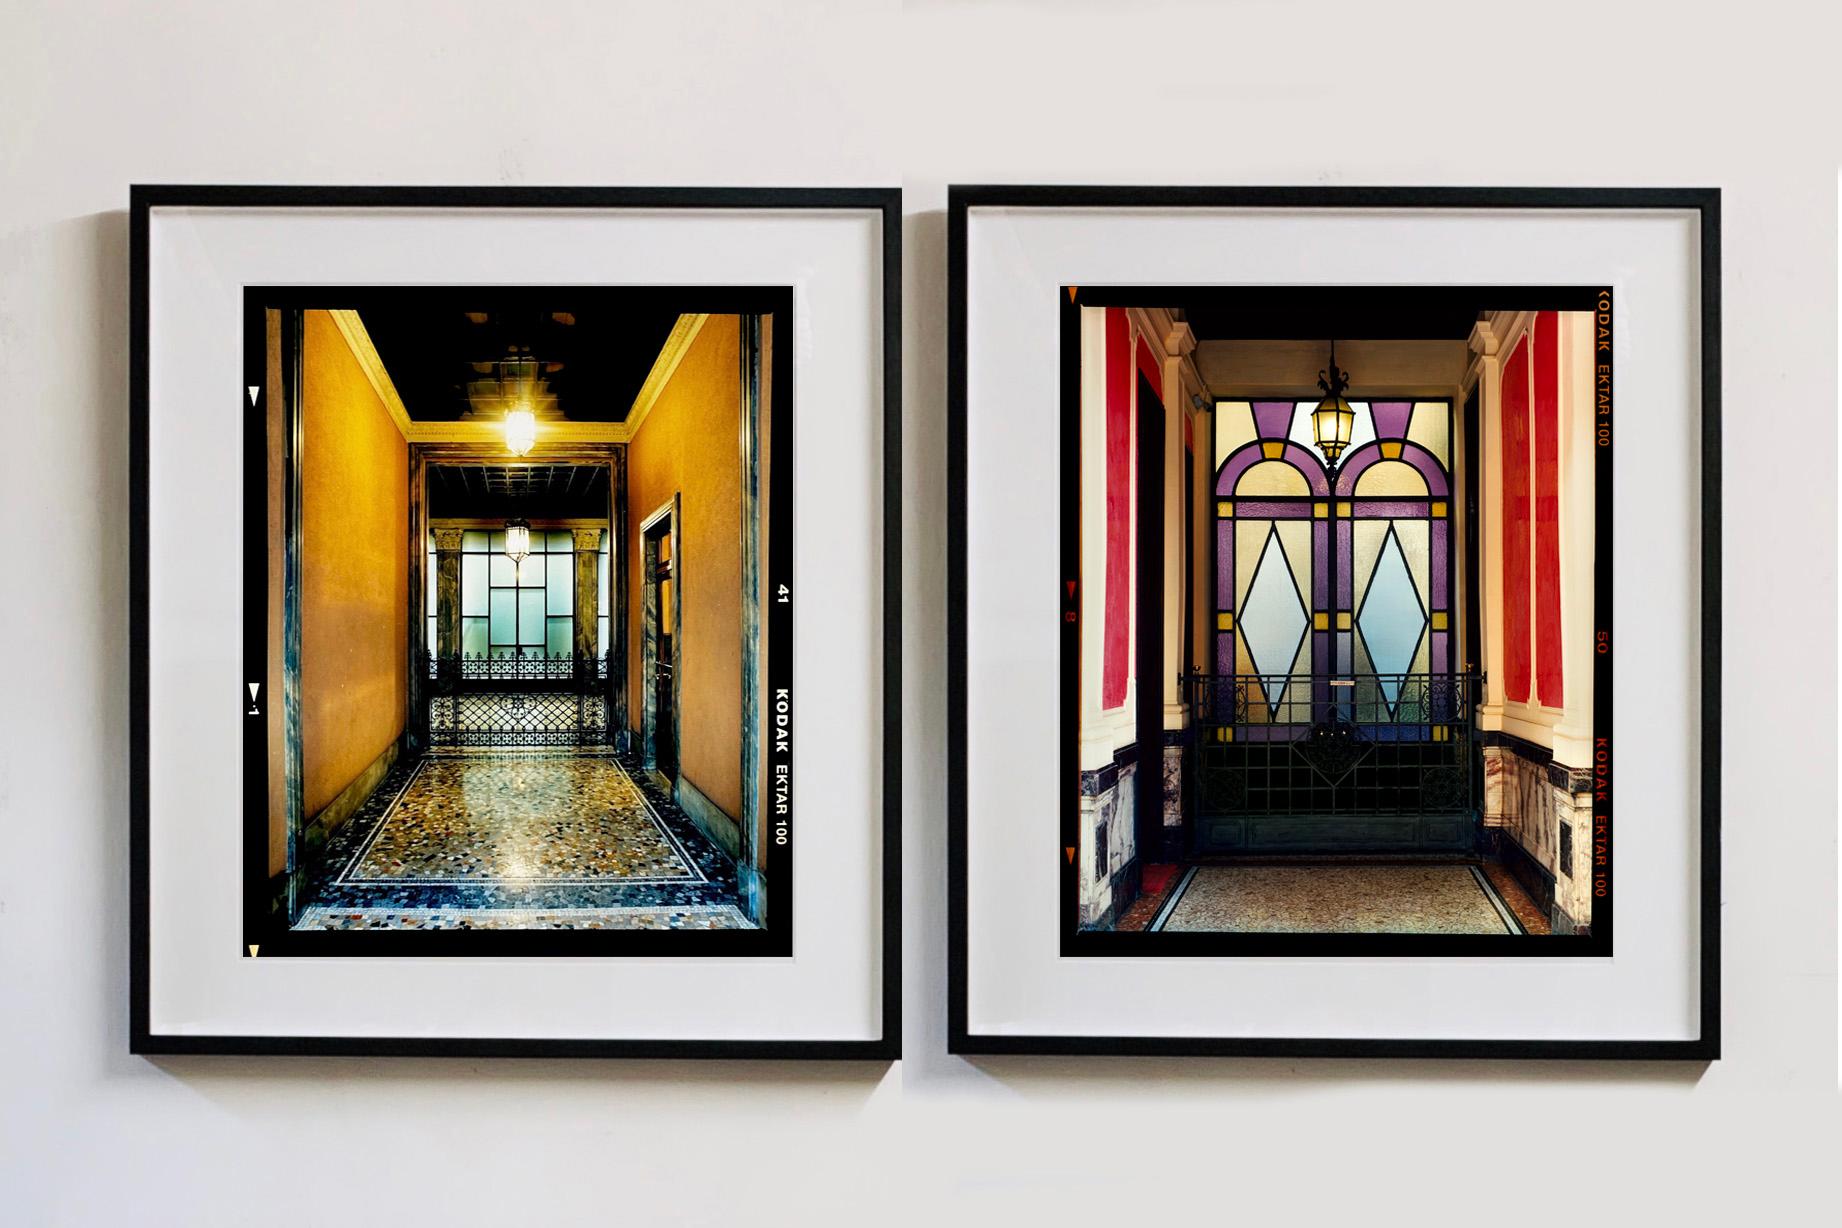 Foyer VII, aus Richard Heeps Serie A Short History of Milan, die als Sonderprojekt für die Affordable Art Fair Milan 2018 entstand. Es wurde gut aufgenommen, und das Kunstwerk ist bei Kunstkäufern auf der ganzen Welt beliebt geworden. Richard